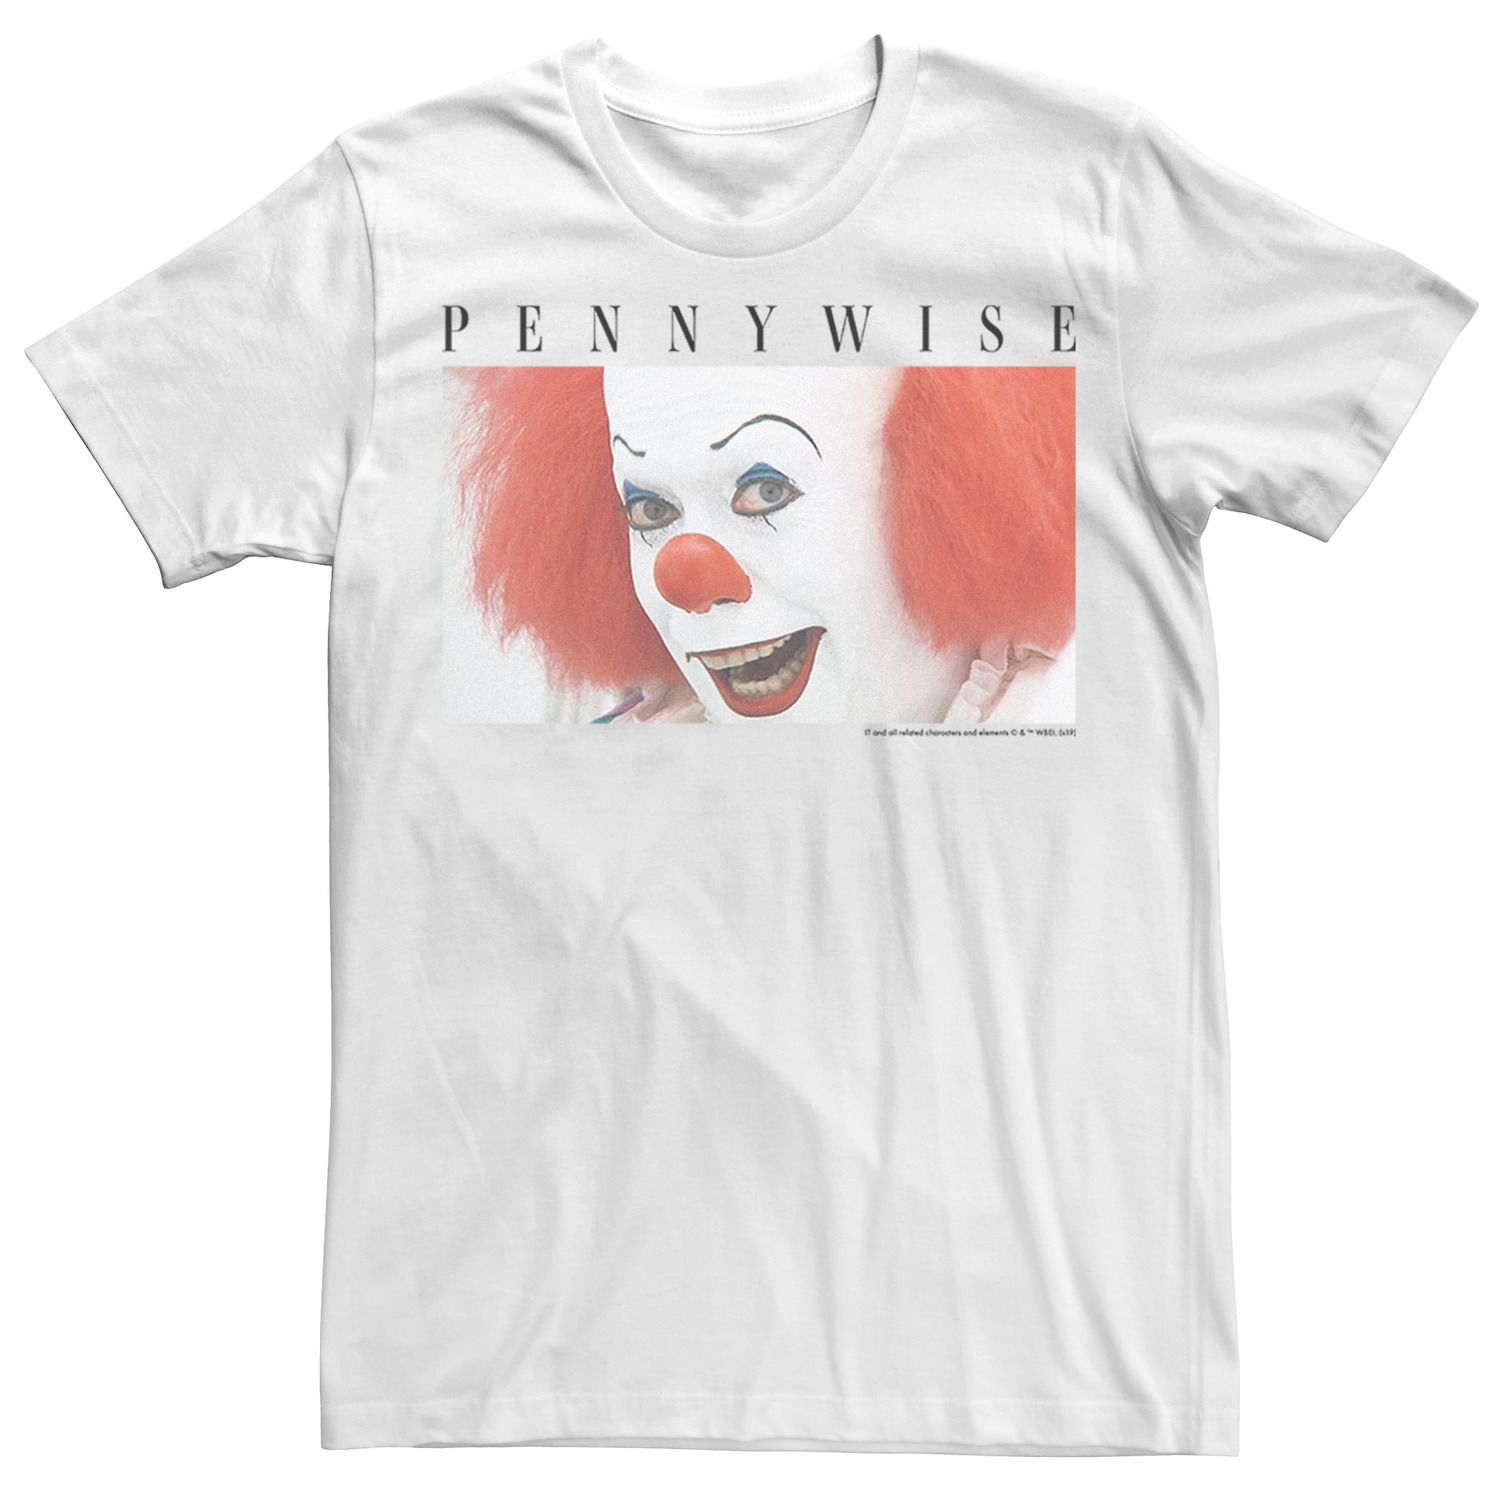 Мужская футболка IT The Movie Pennywise с портретом Licensed Character neca фигурка neca it pennywise 1990 movie